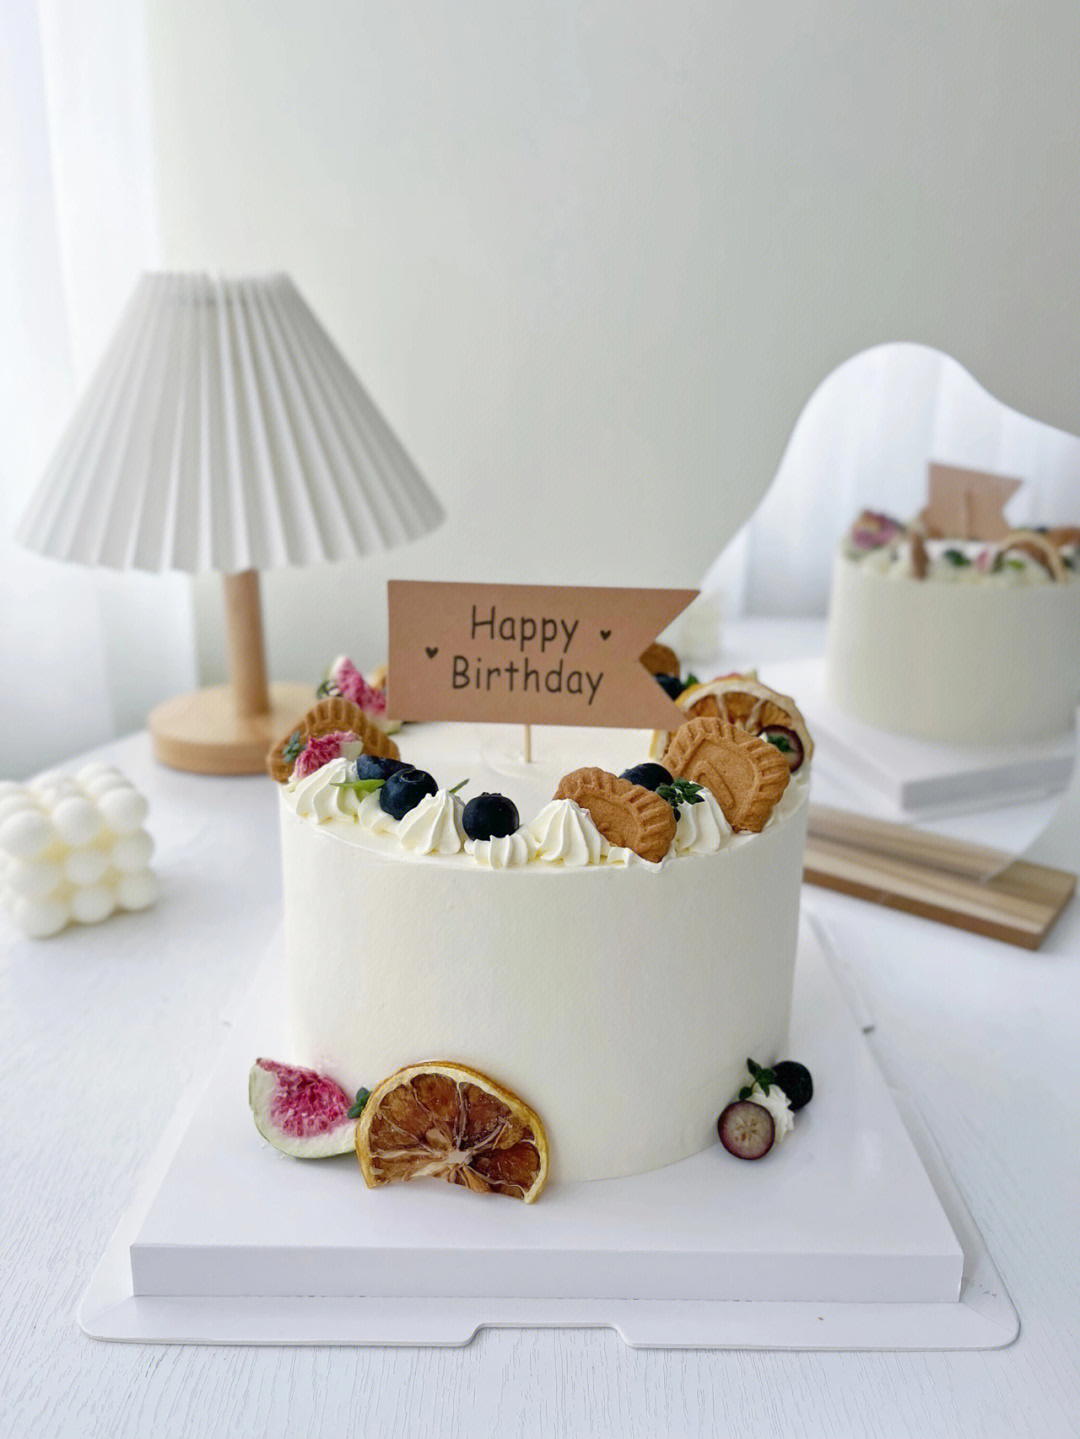 生日蛋糕简约 白灰图片